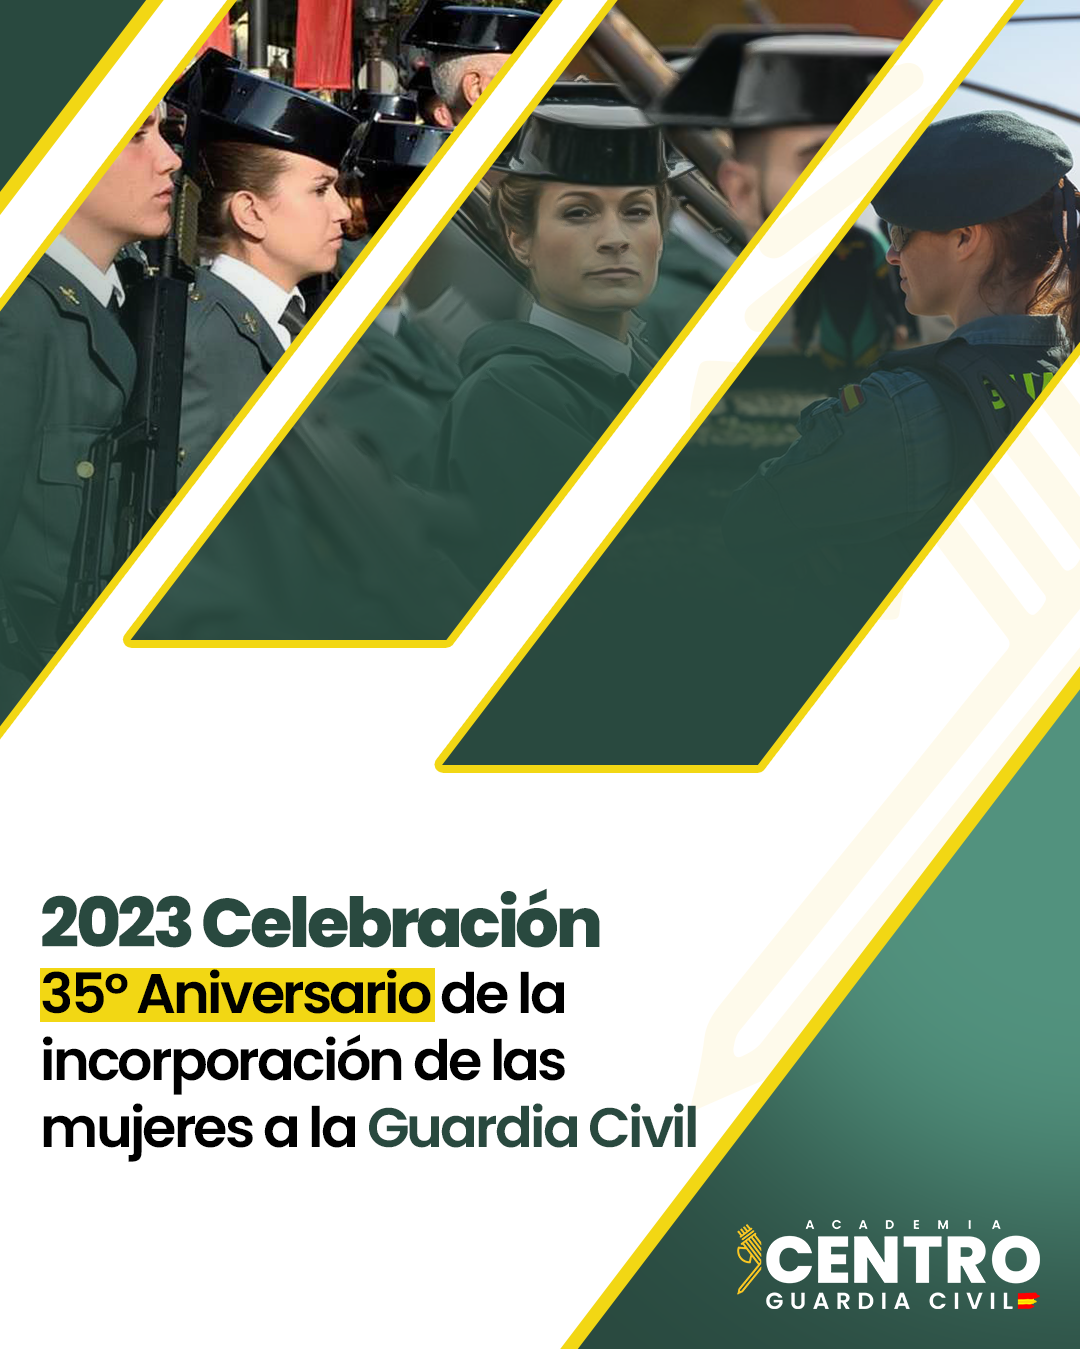 2023 Celebración 35º Aniversario de la incorporación de las mujeres a la Guardia Civil